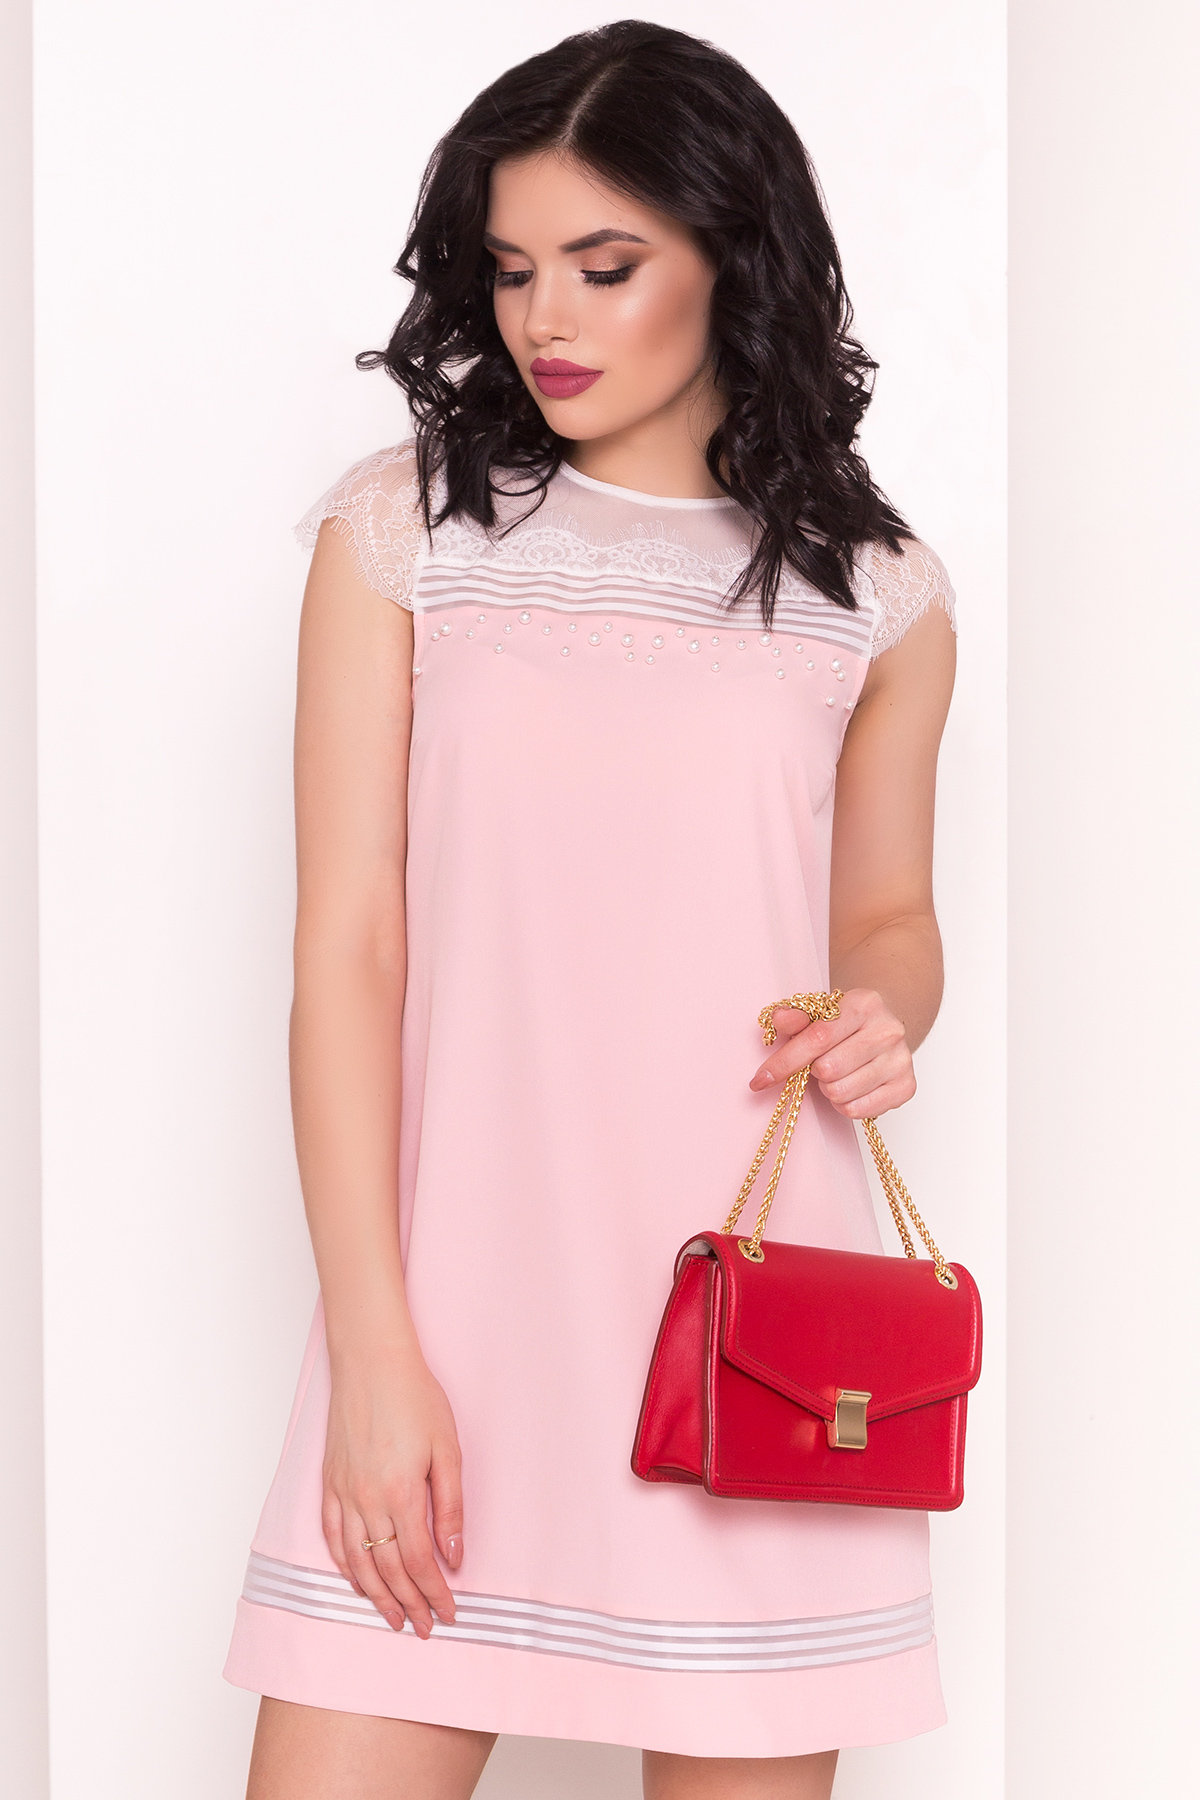 Платье Итана 4880 АРТ. 35091 Цвет: Розовый - фото 2, интернет магазин tm-modus.ru